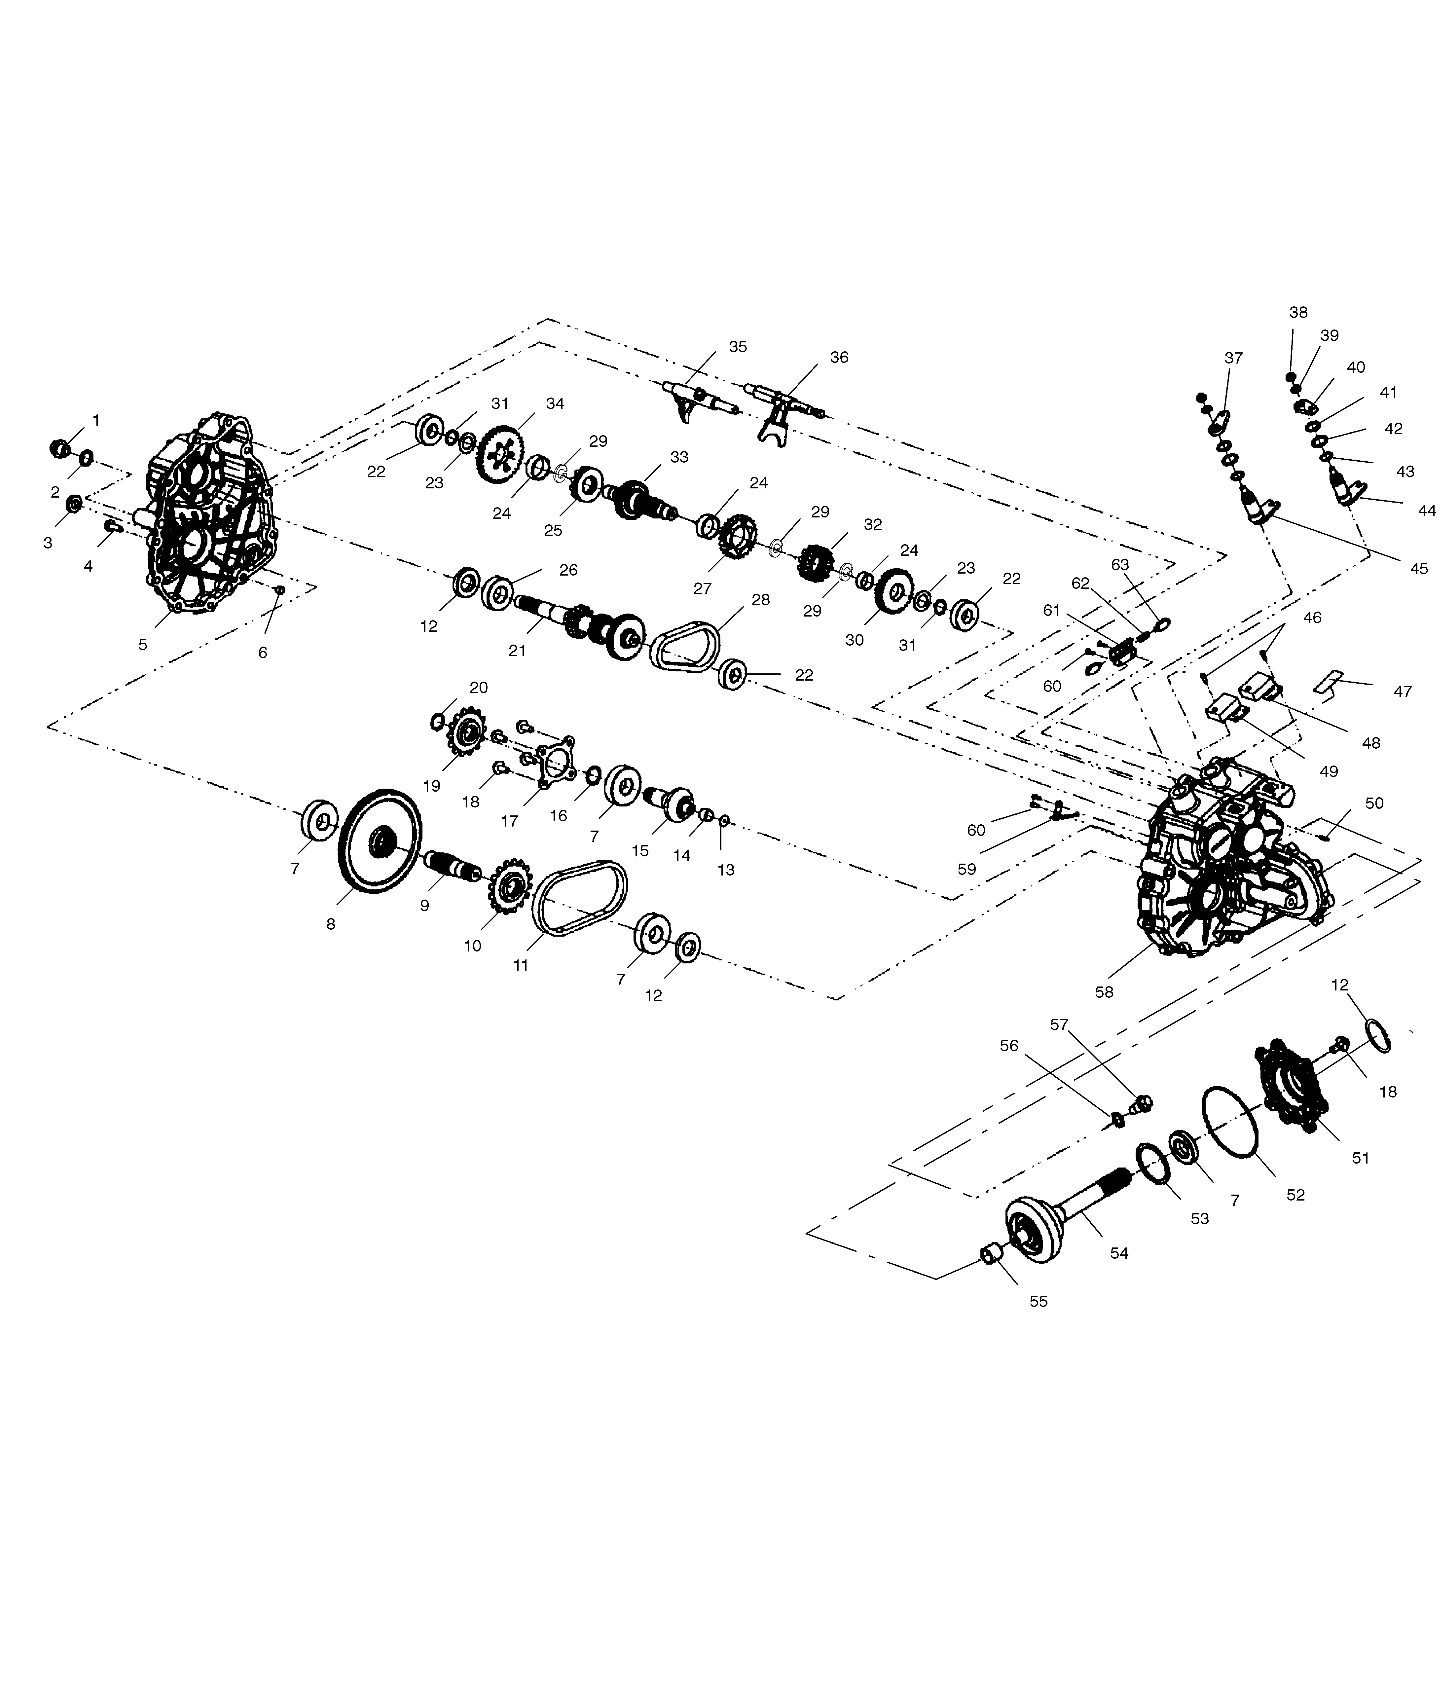 Foto diagrama Polaris que contem a peça 3233033